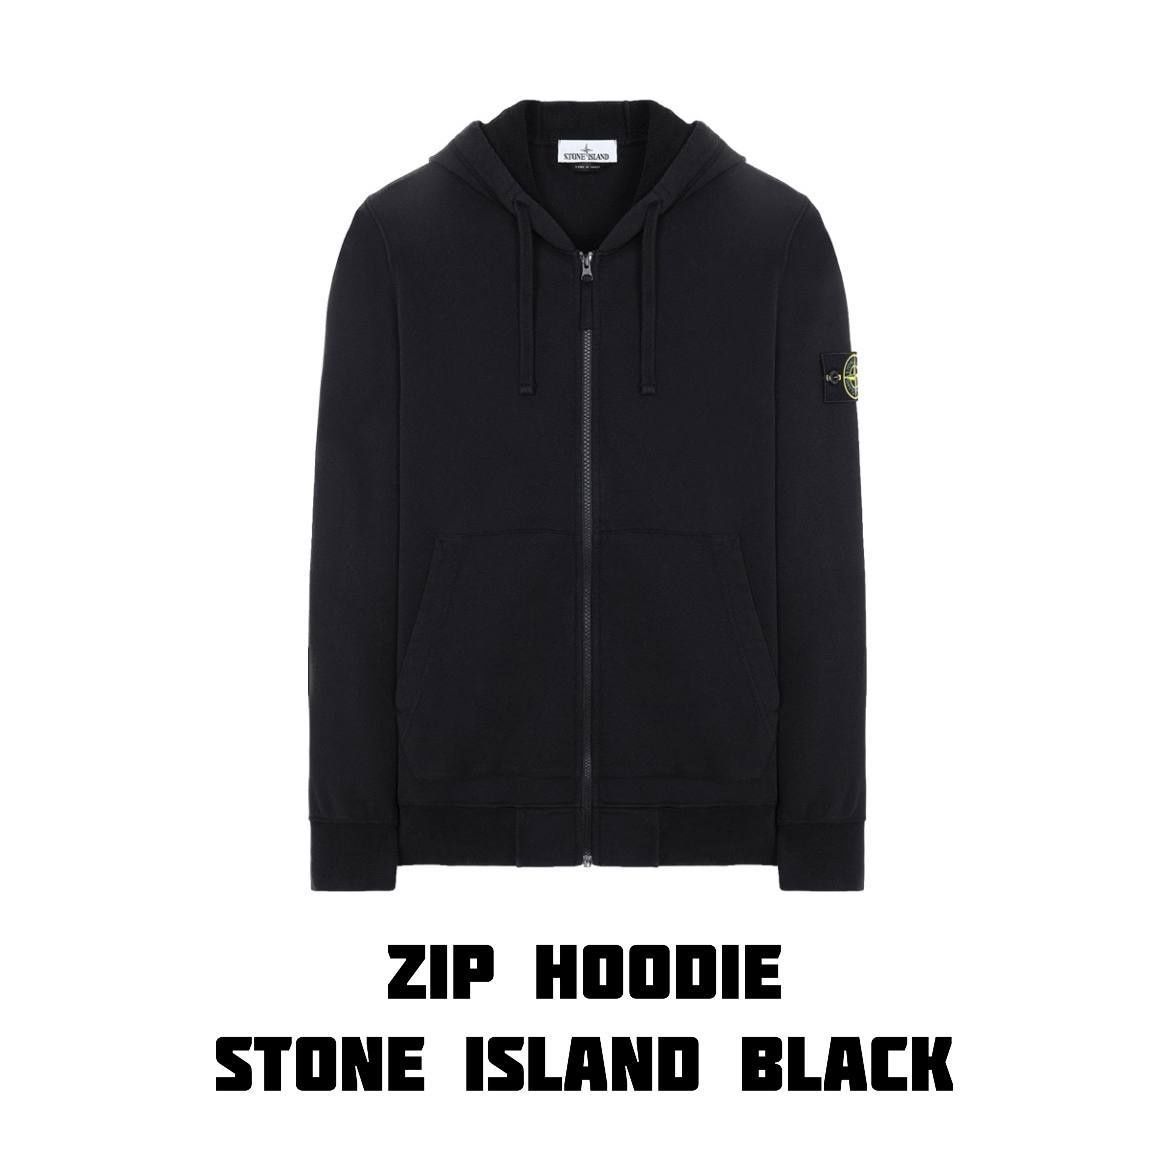 Zip Hoodie Stone Island Black